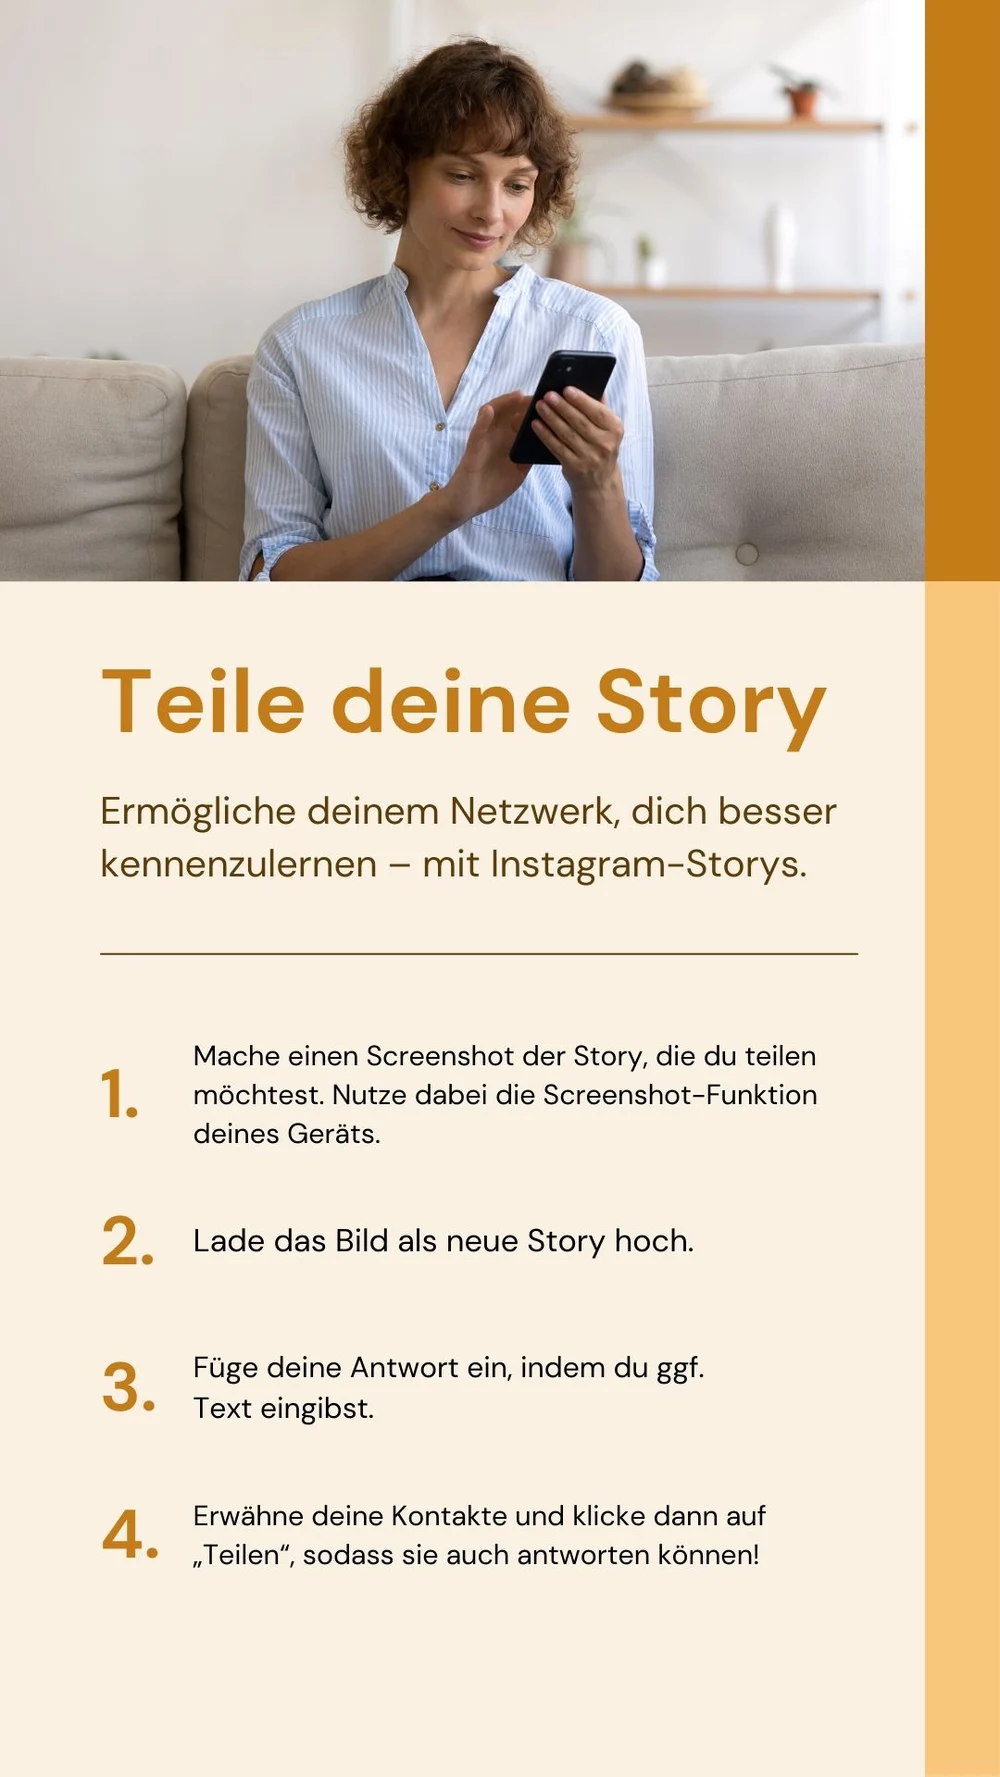 Teile deine Story auf Instagram - AK Move Digital